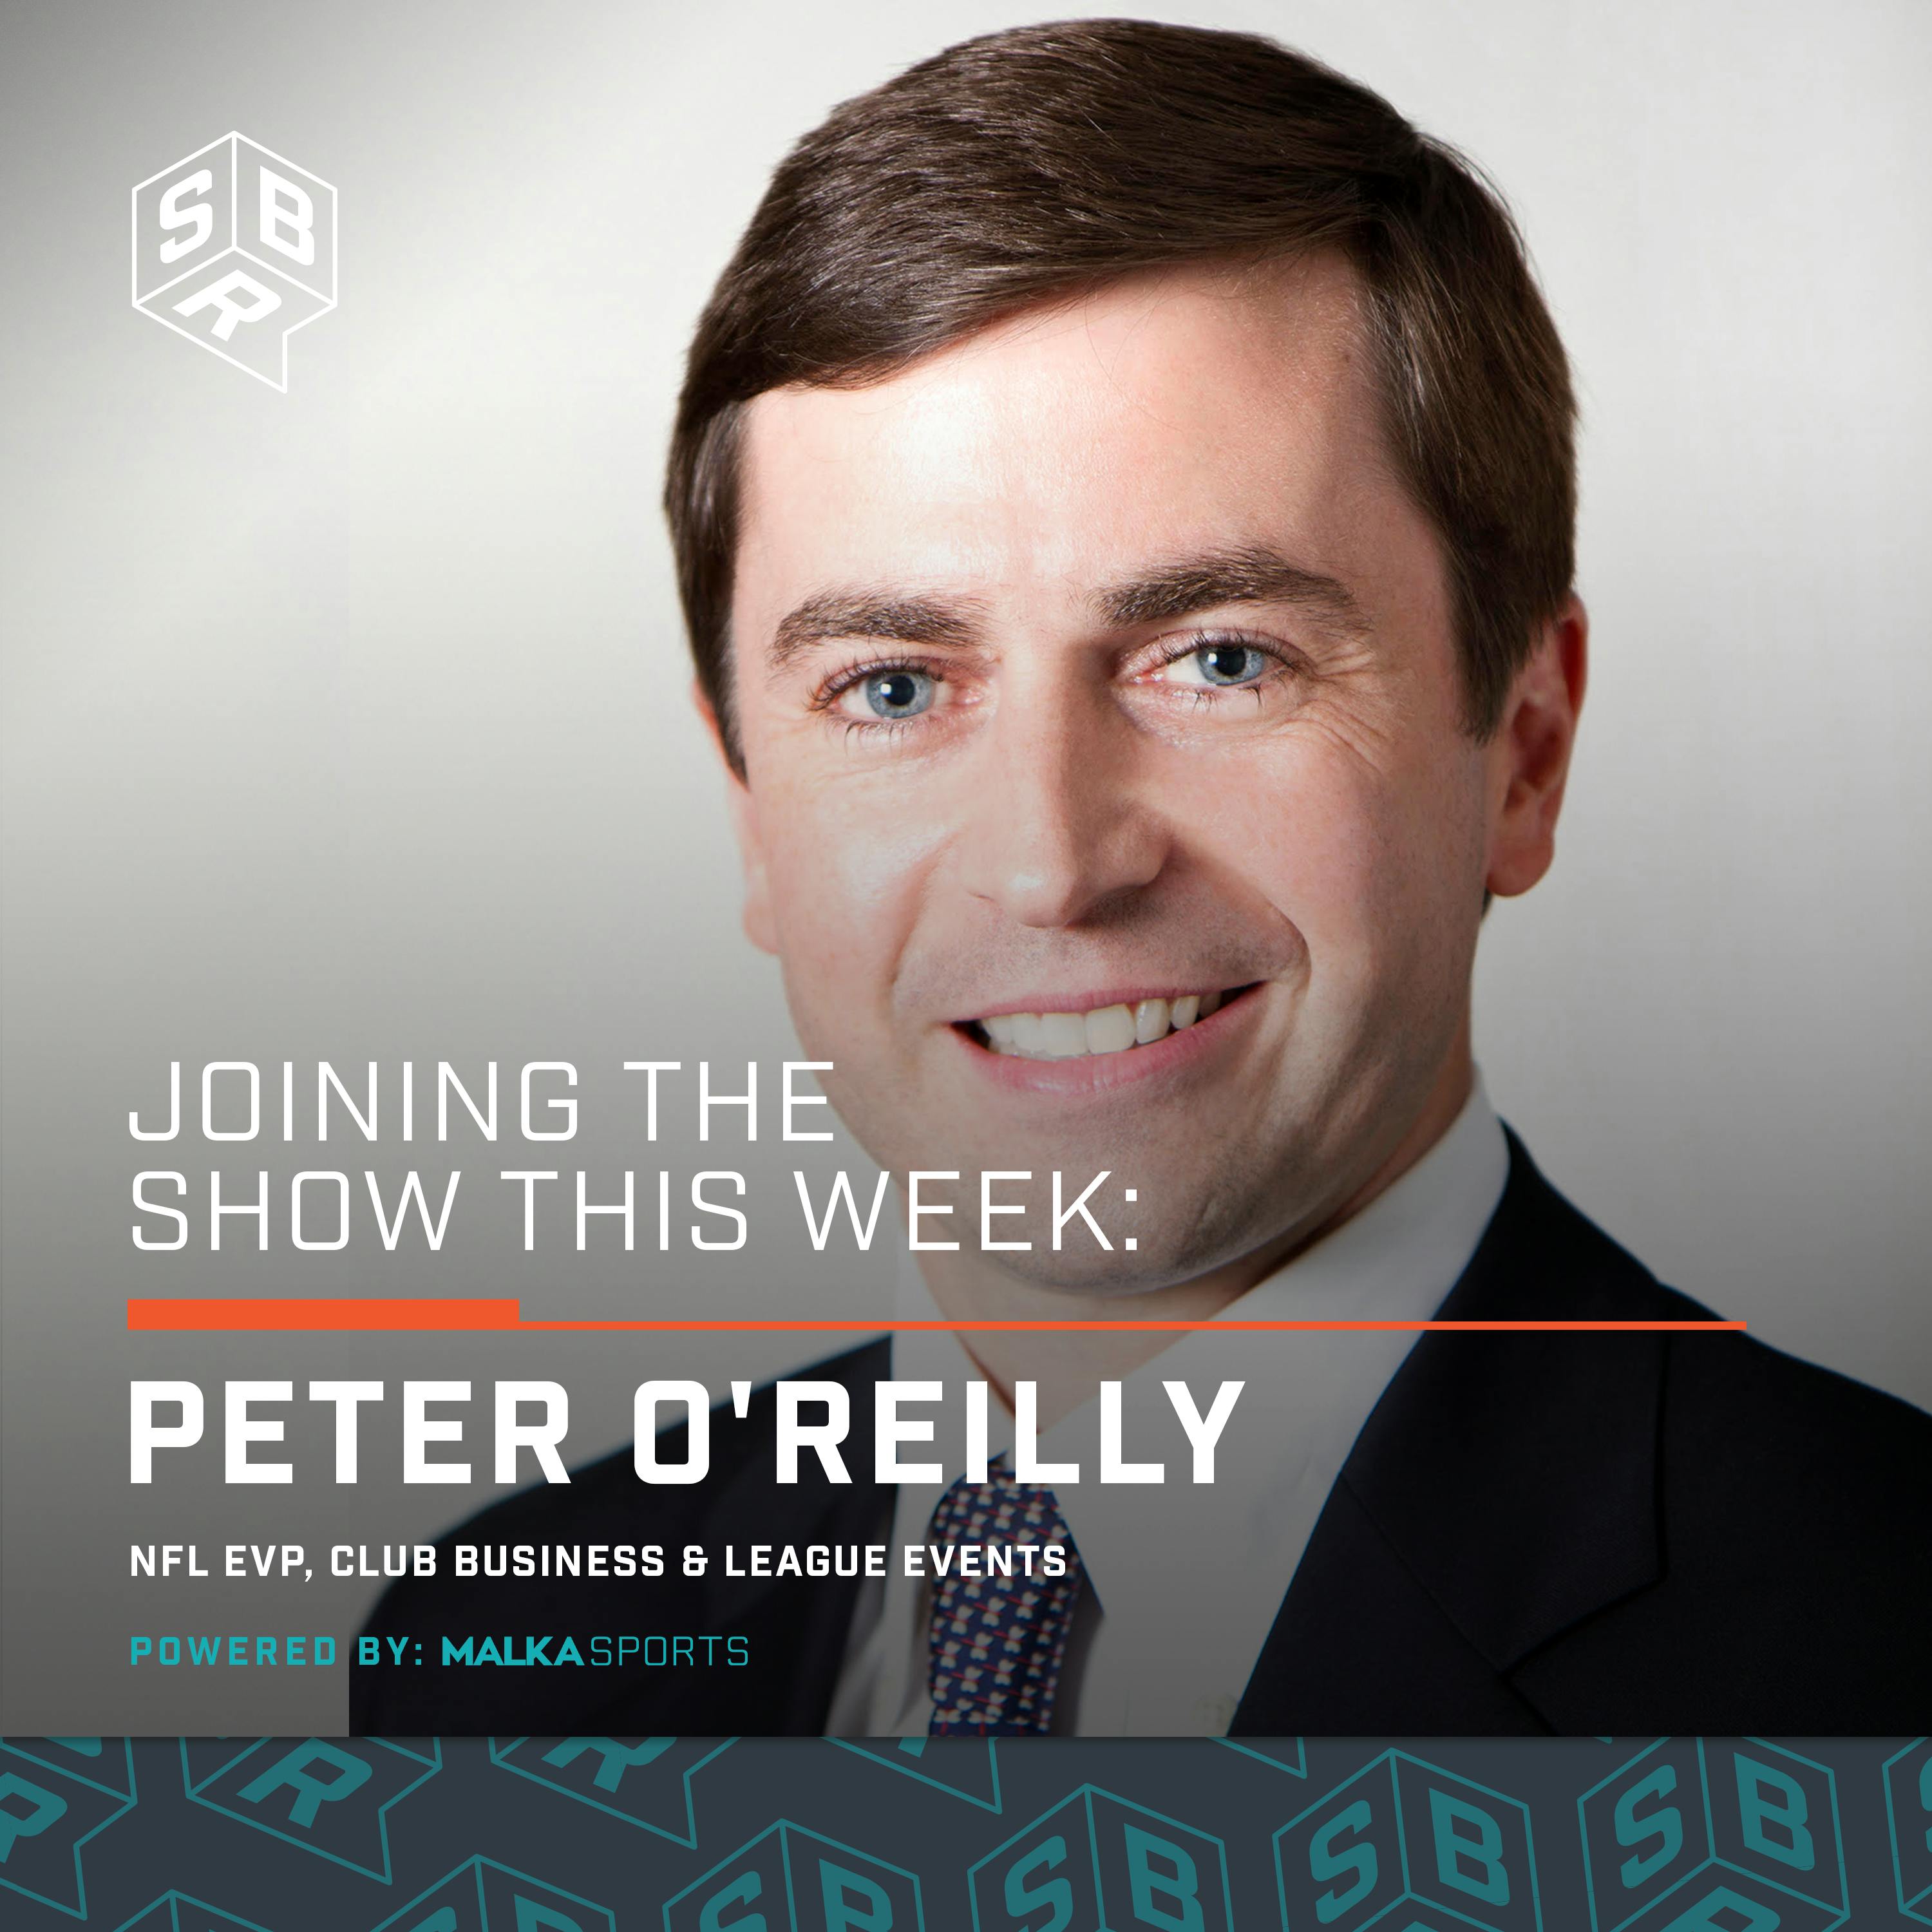 Peter O'Reilly - NFL EVP Club Business & League Events